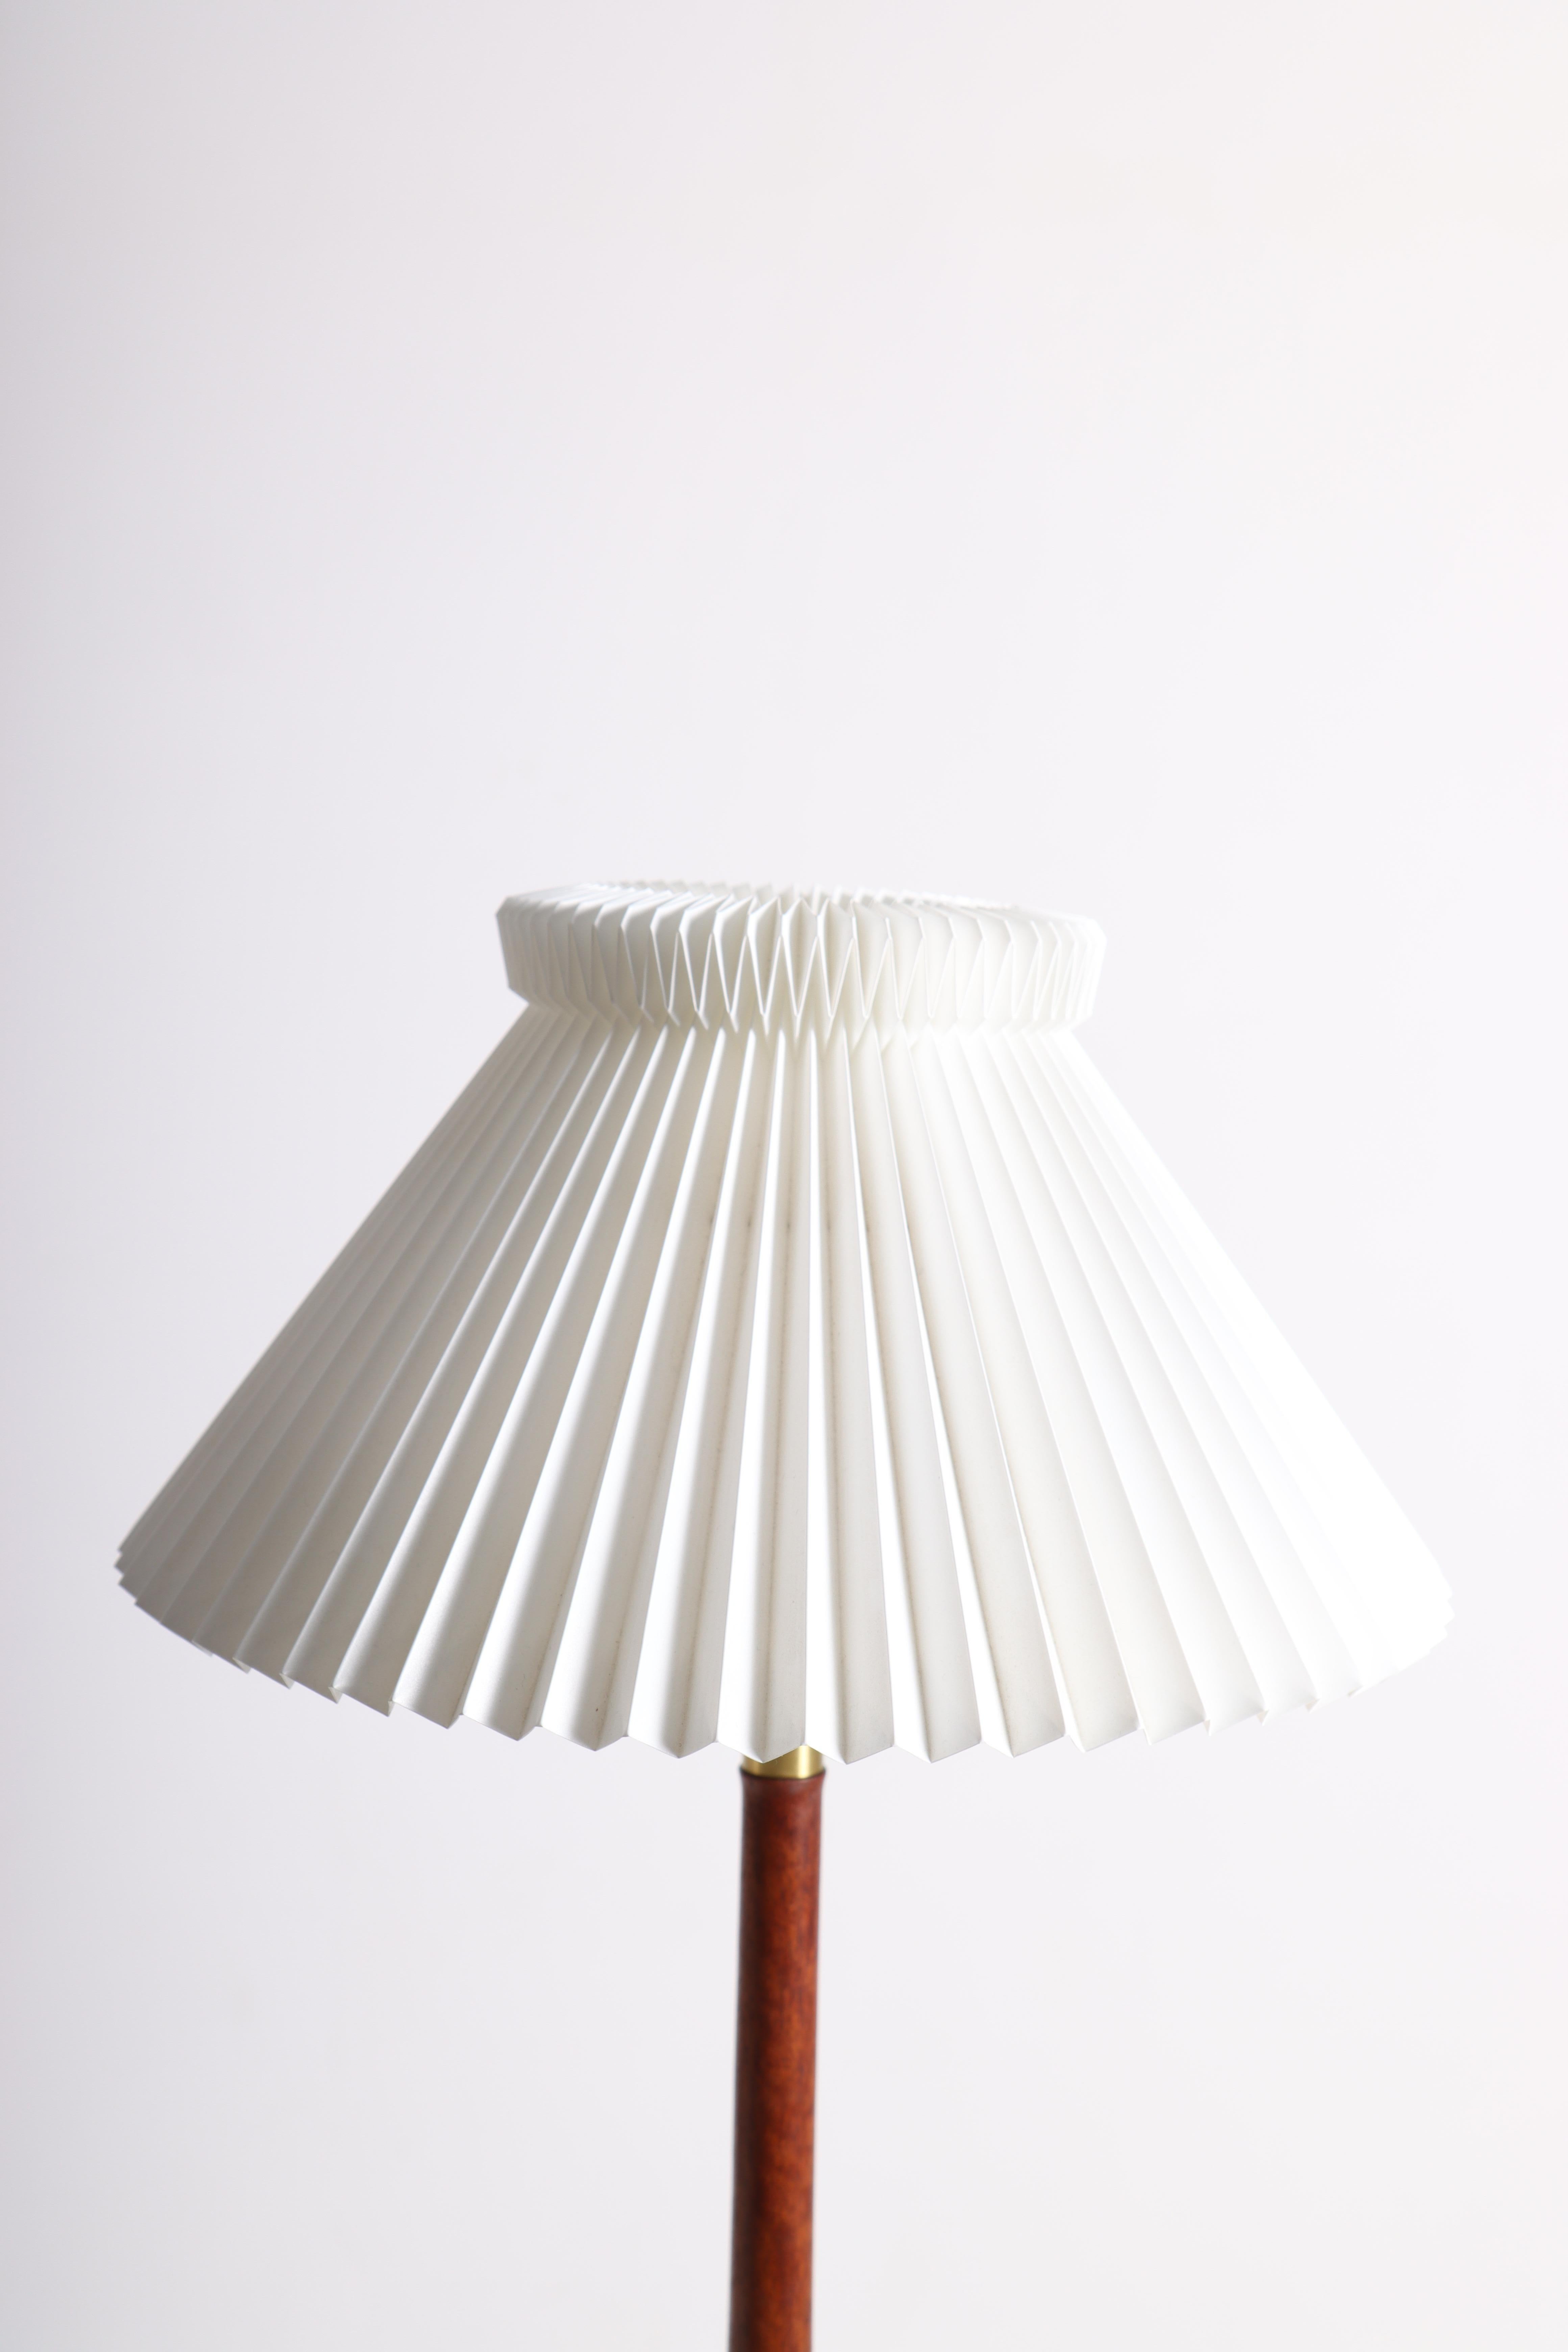 Elegant lampe de table en acajou massif. Conçu par Esben Klint et fabriqué par Le Klint dans les années 1950.